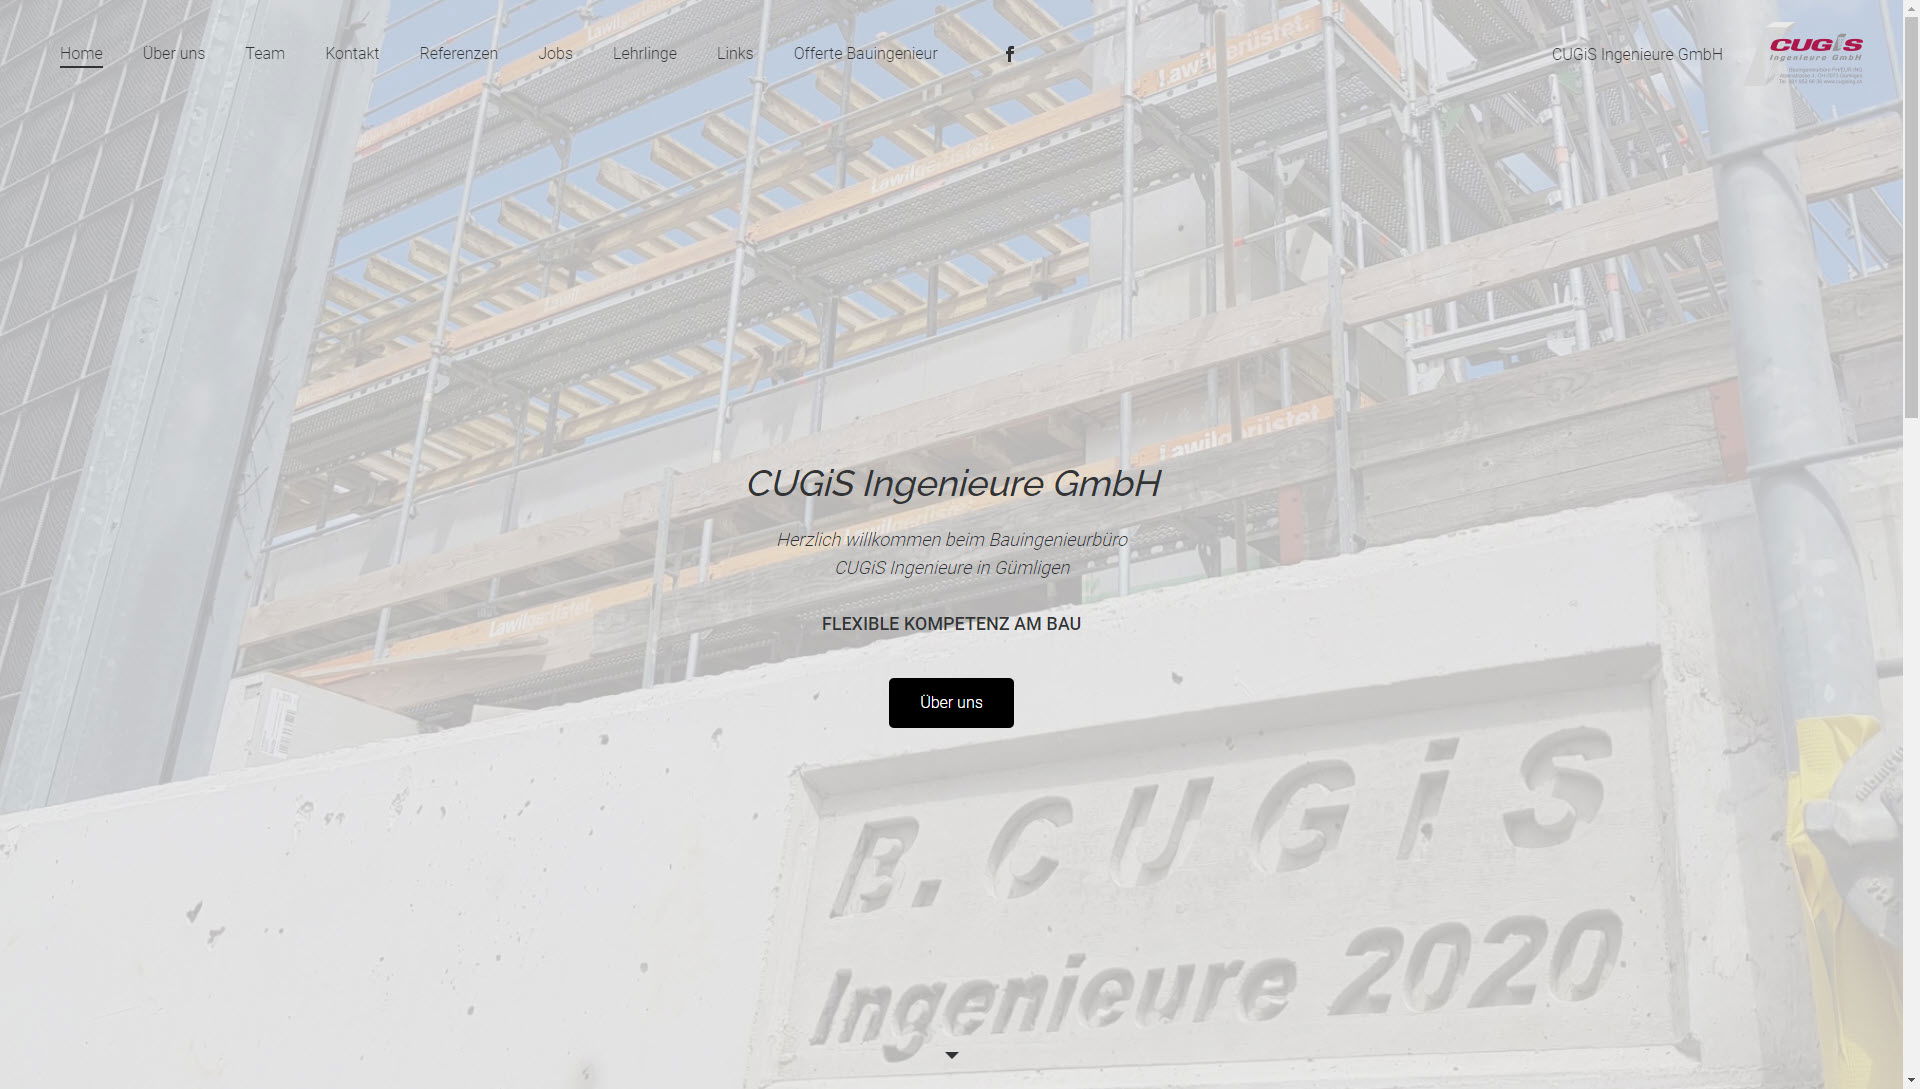 Cugis Ingenieure GmbH